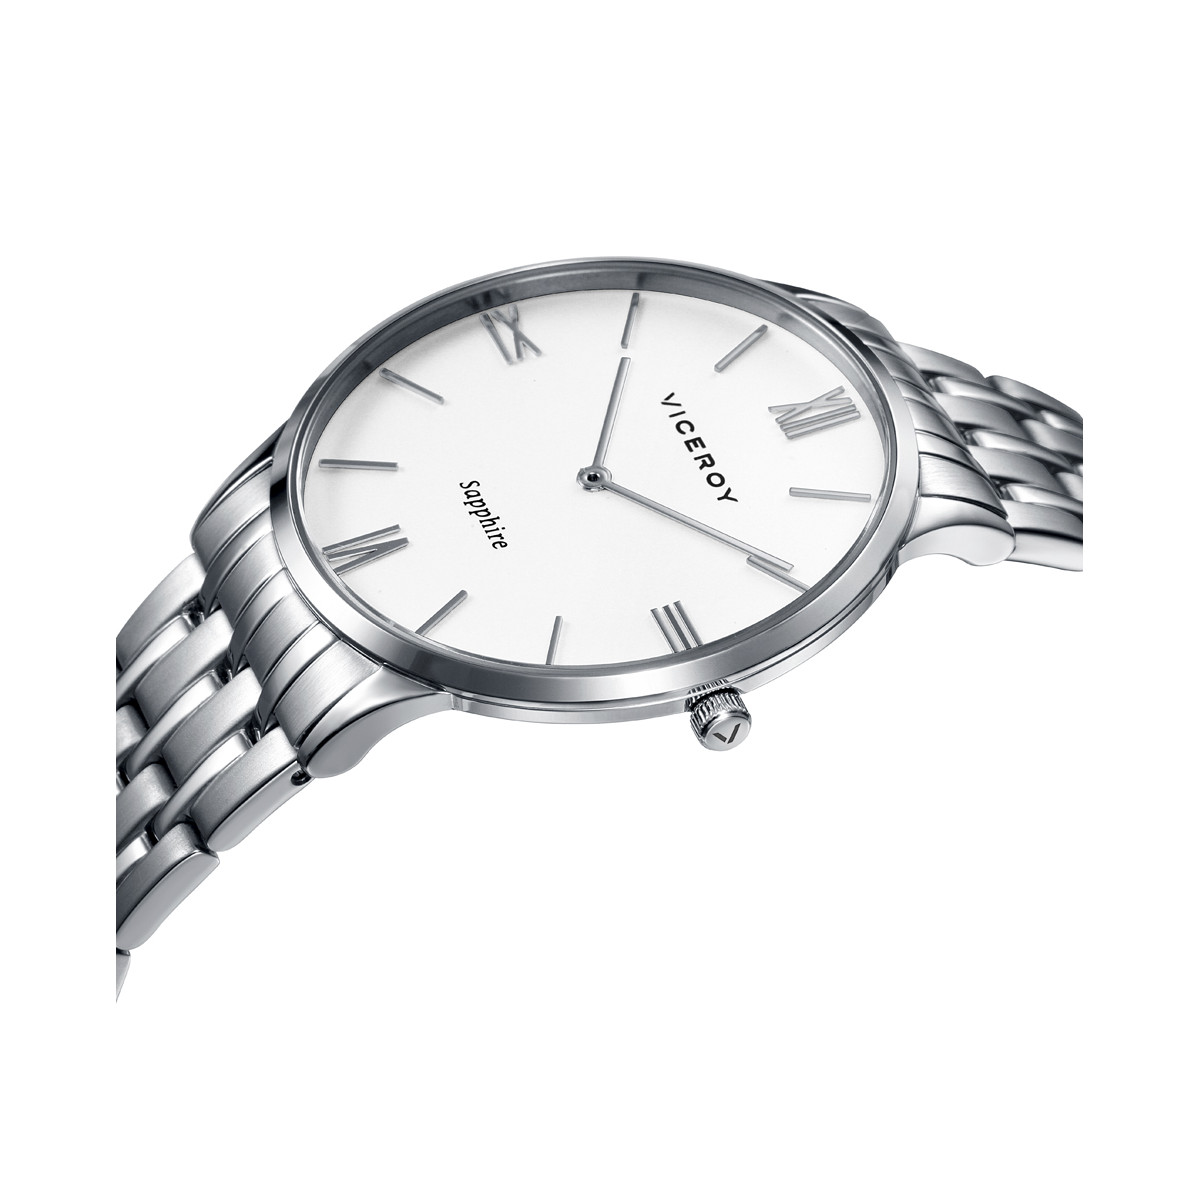 Relojes color blanco • El especialista en relojes •